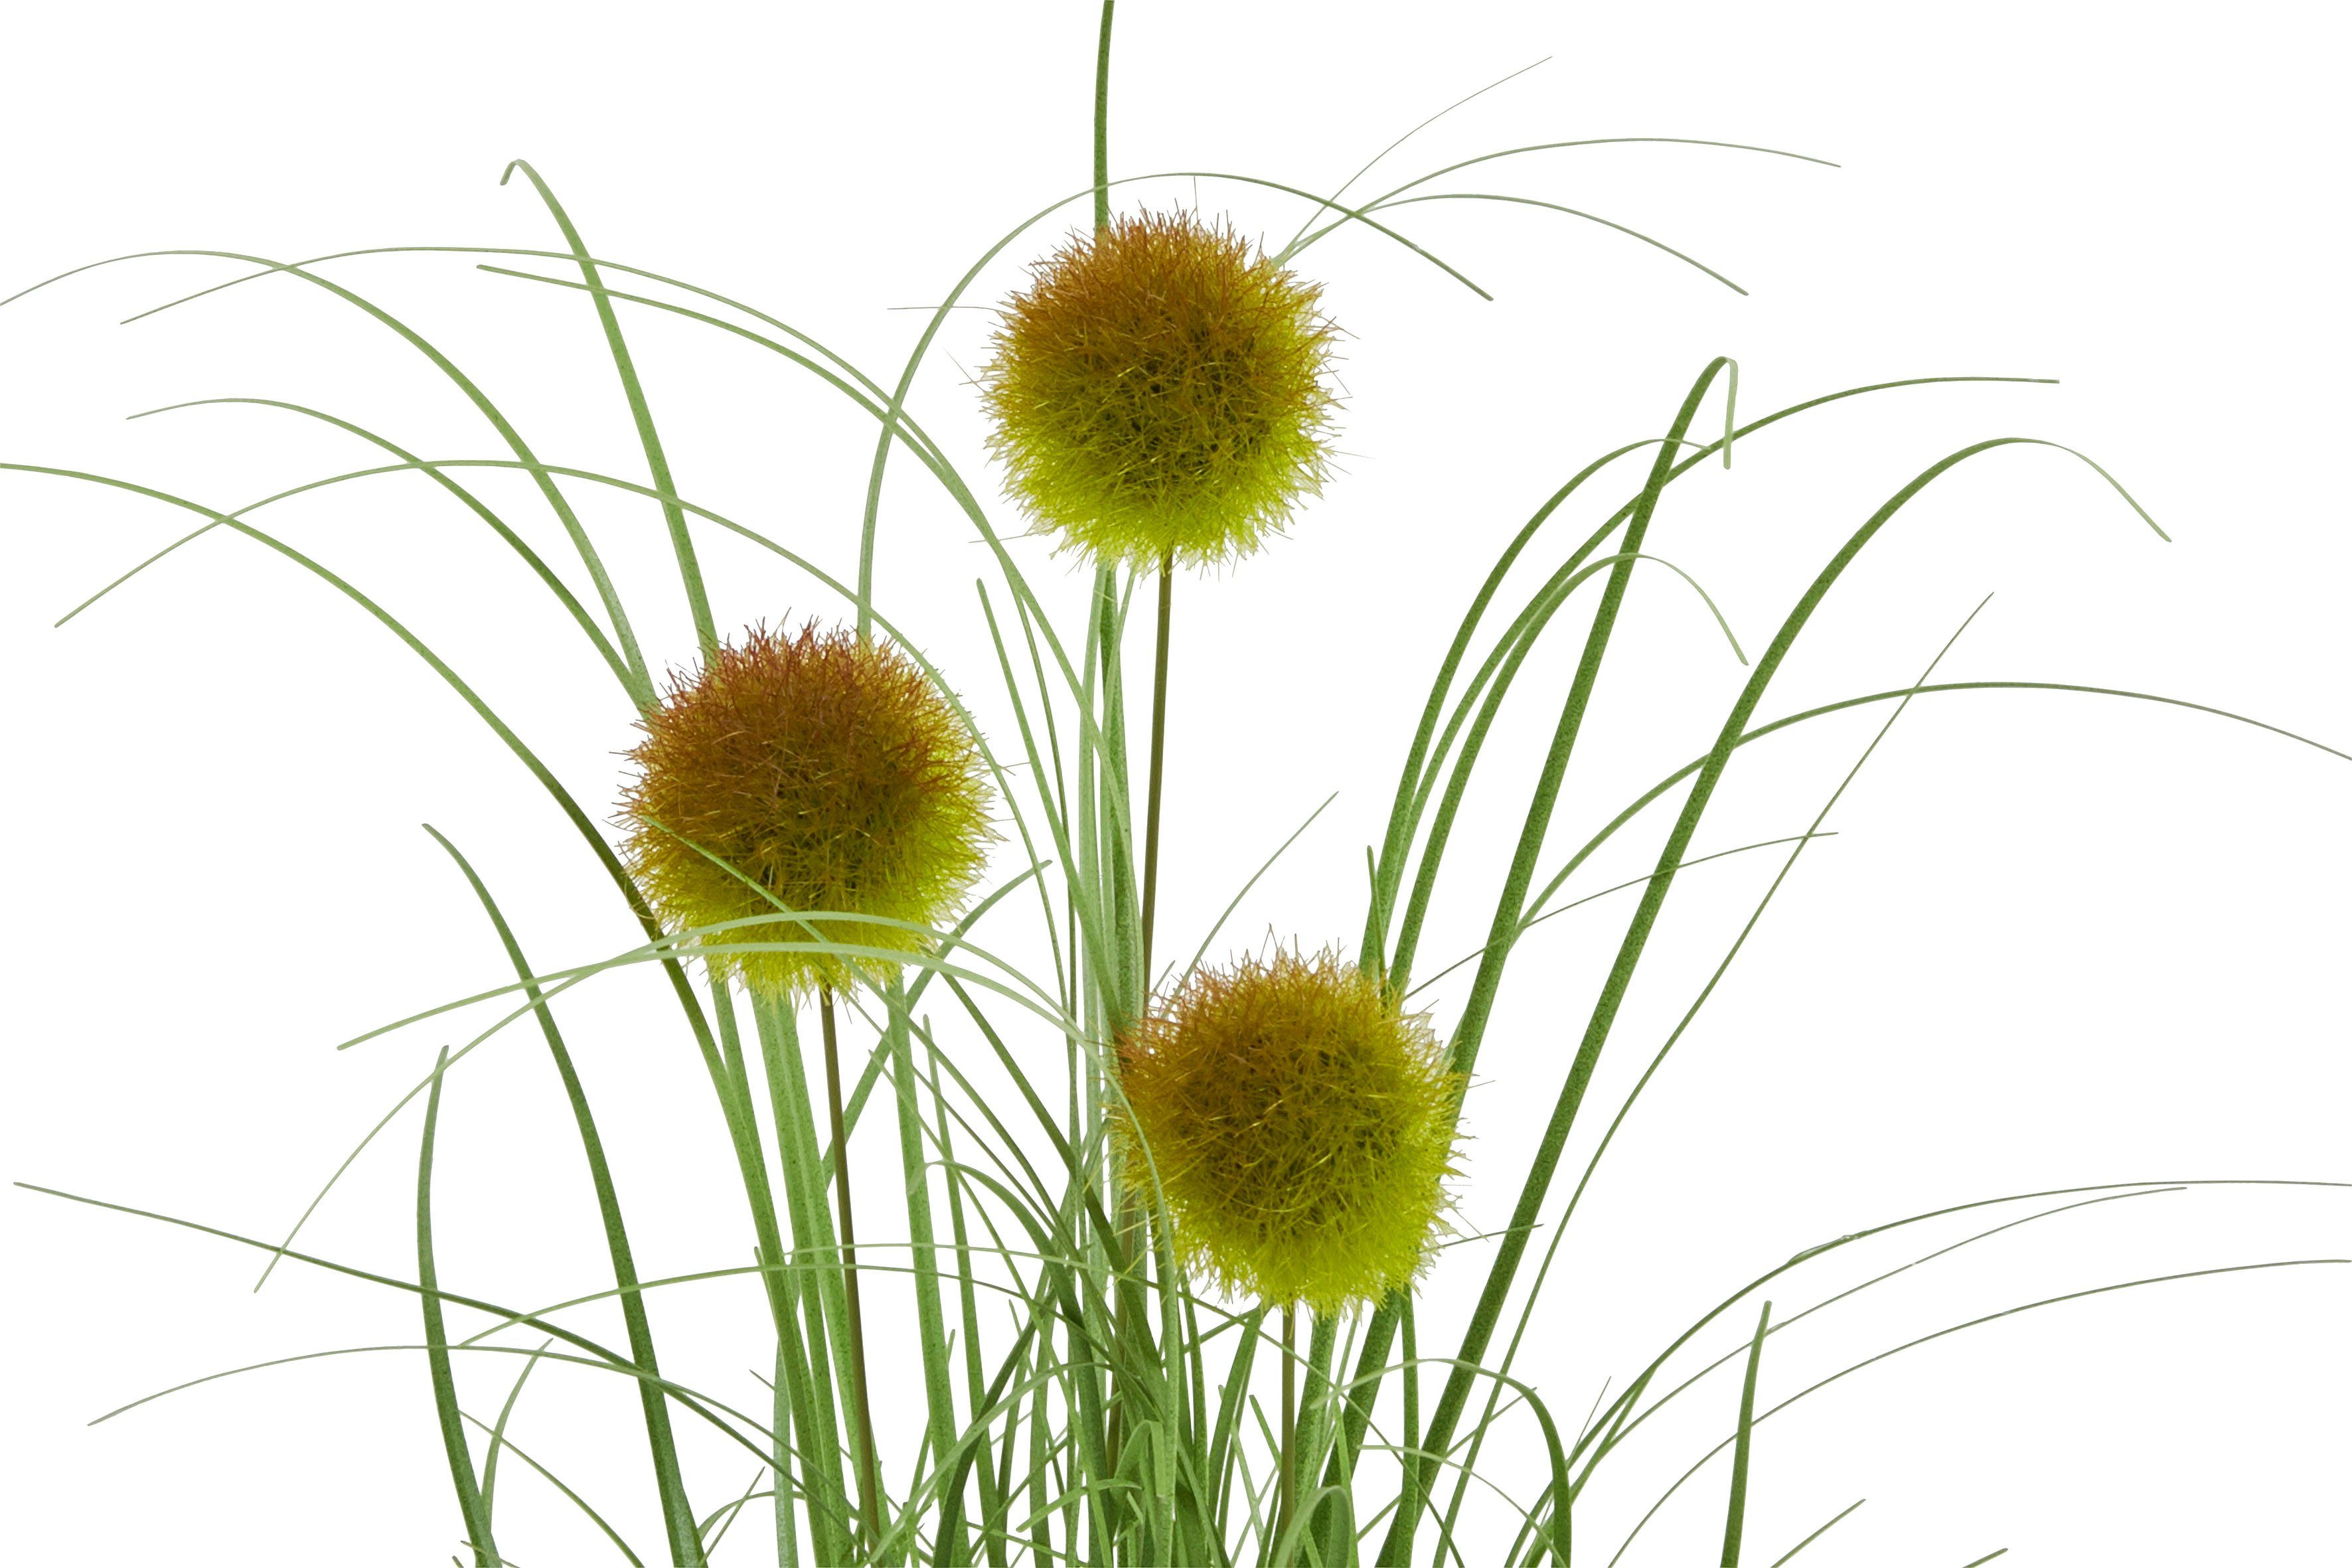 Höhe cm, Gras, mit Topf, Kunstgras grün/goldfarben Leonique, Grasbusch 35 im Kunstpflanze, 3er-Set Kletten,